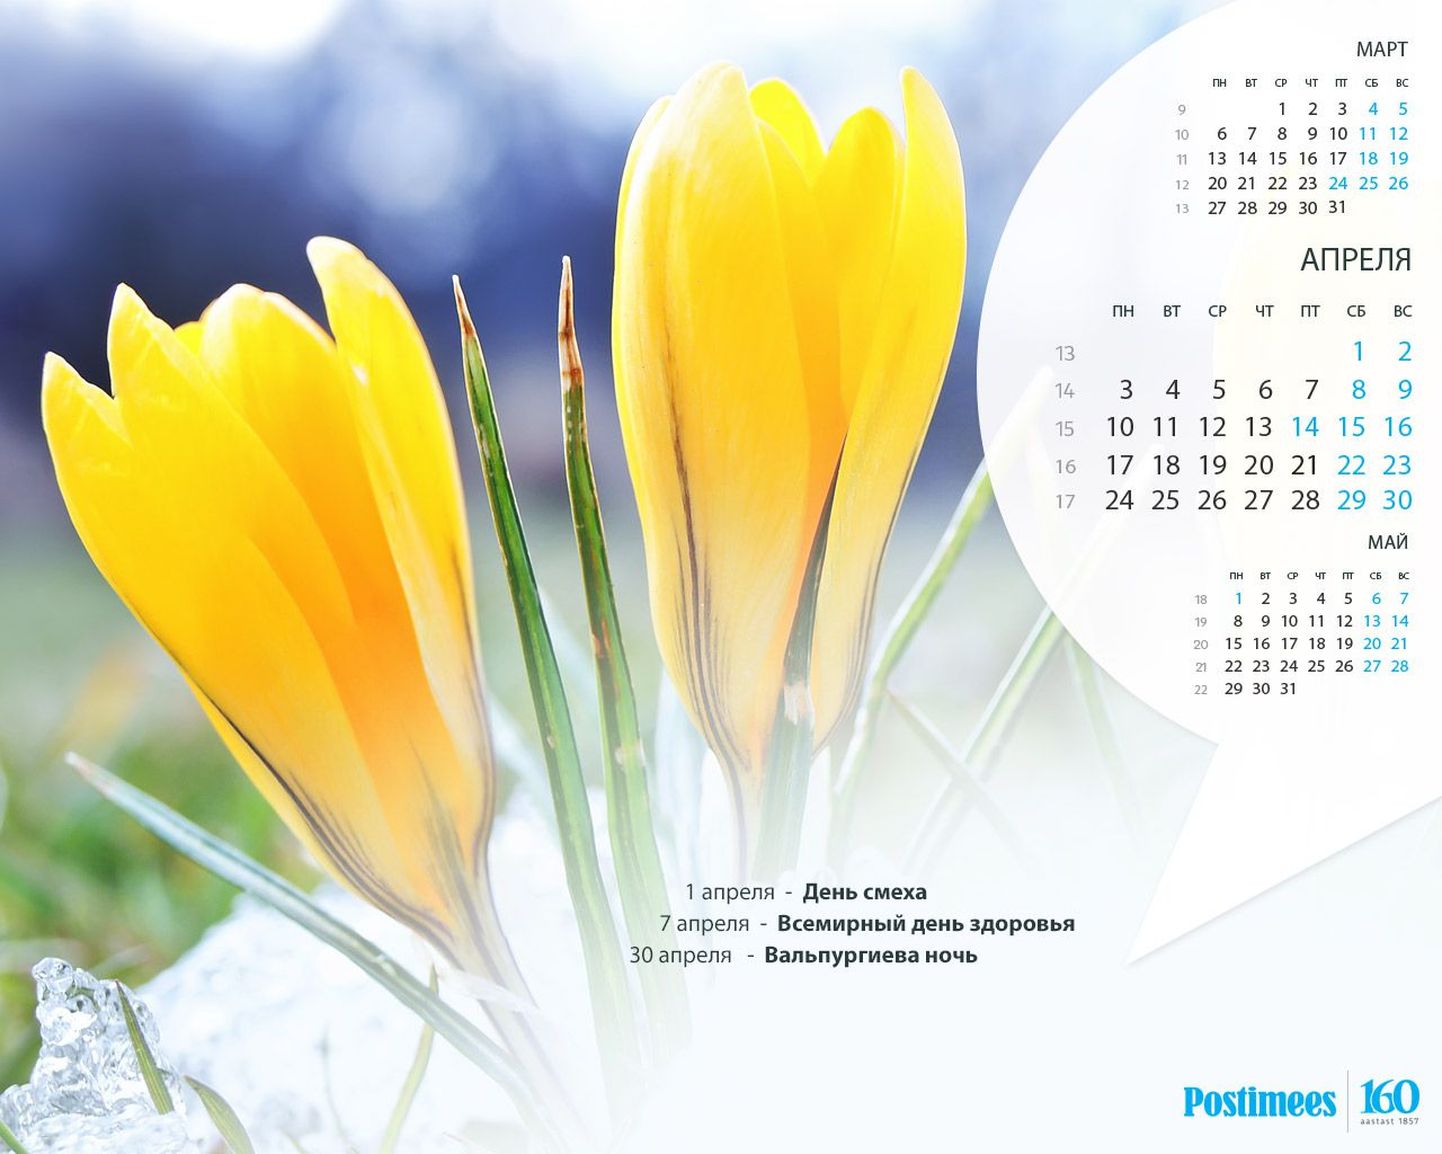 Обои-календарь на апрель (1280x1024).